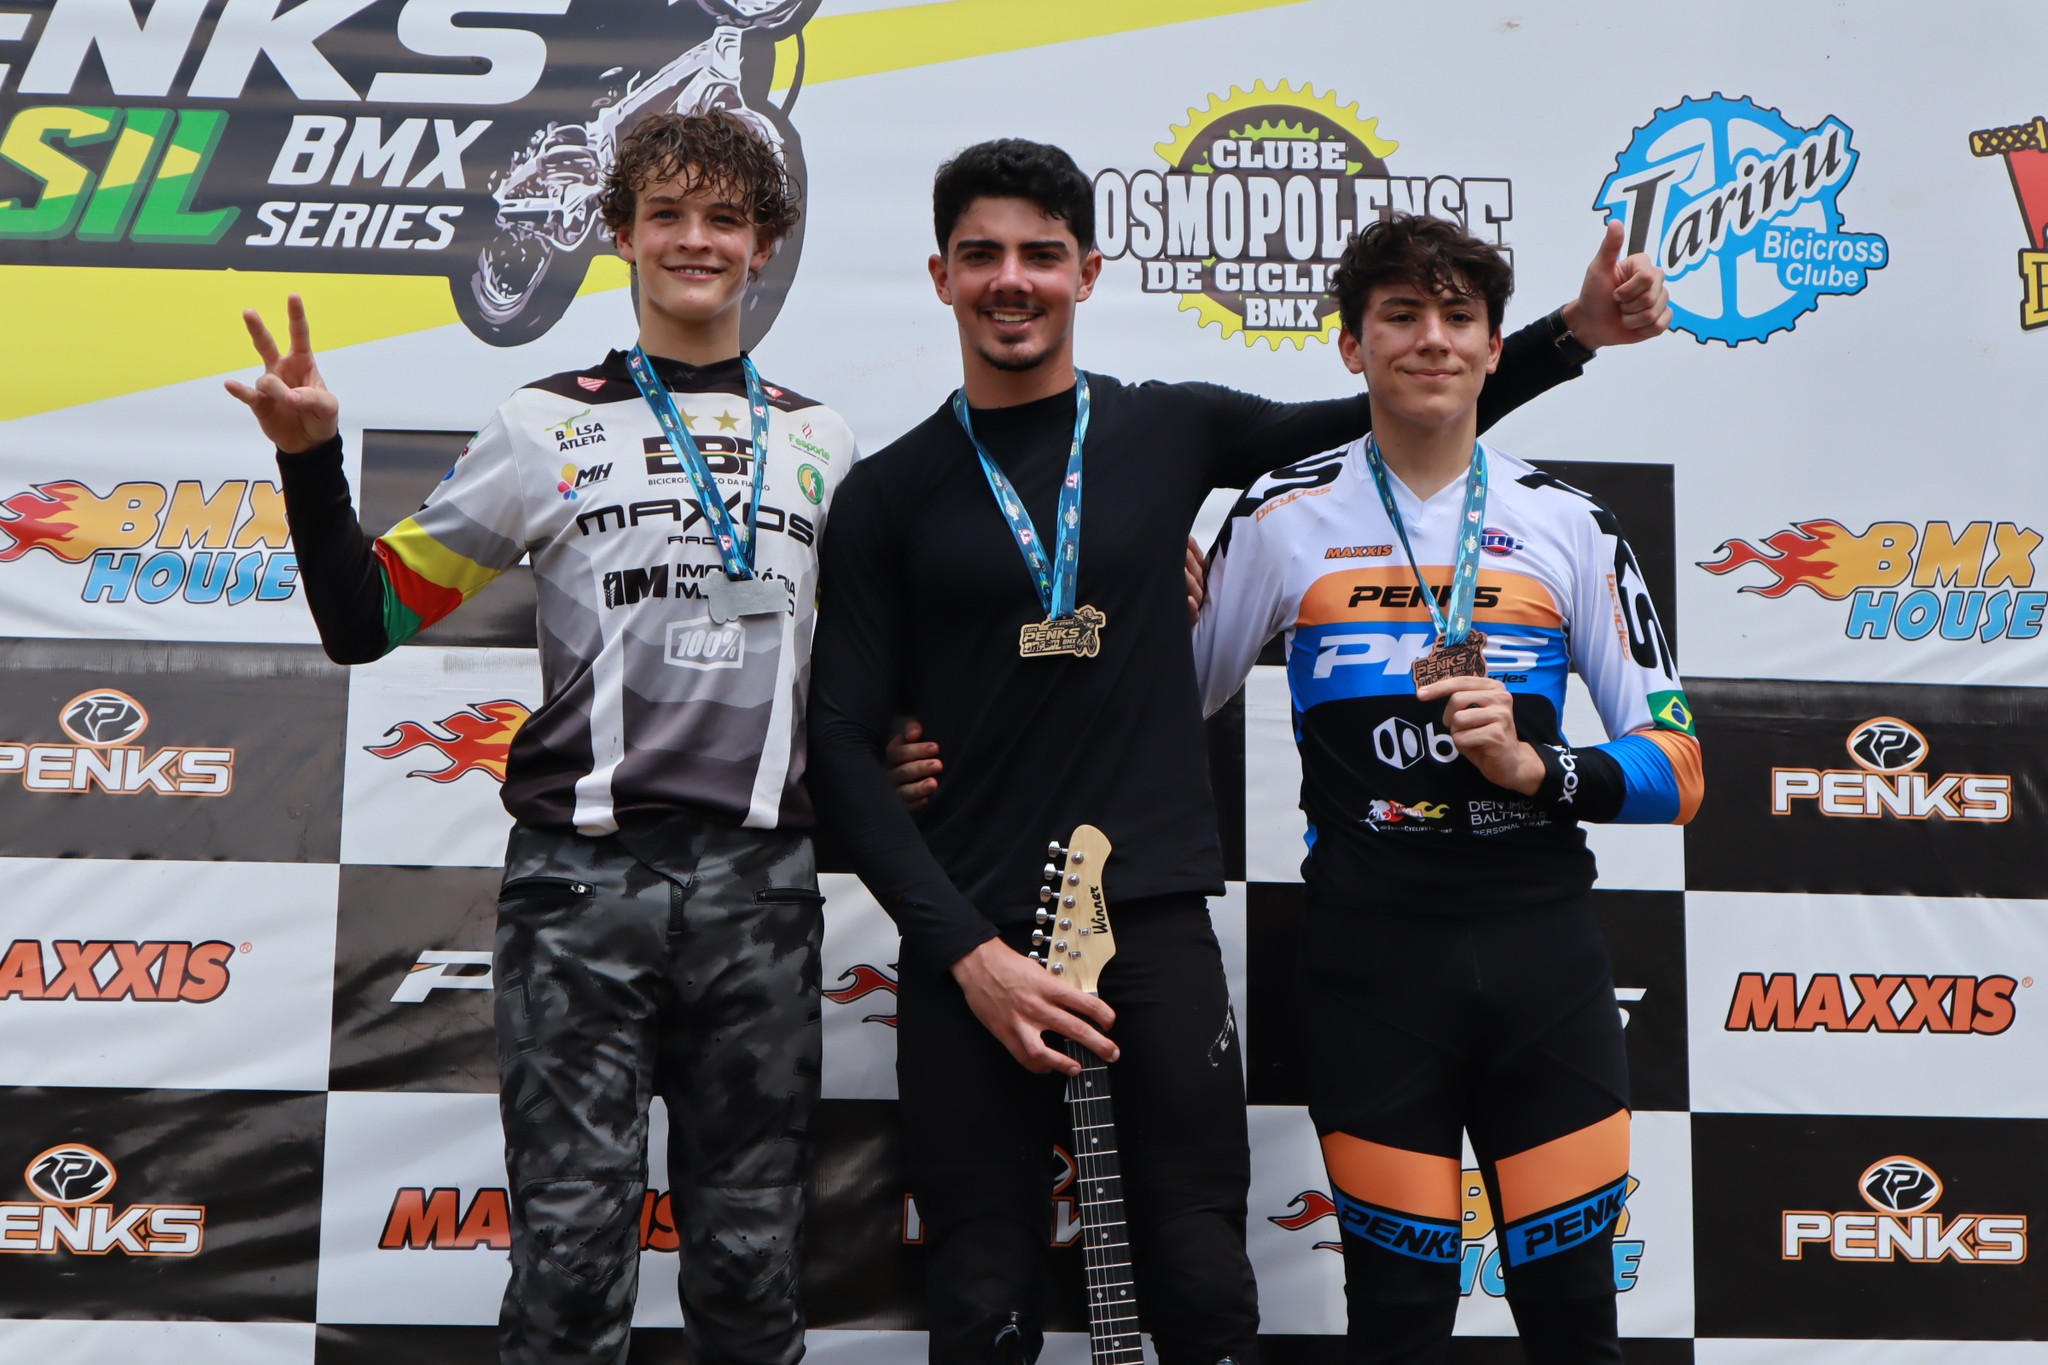 Pilotos cosmopolenses são classificados em campeonato nacional de BMX –  Prefeitura Municipal de Cosmópolis